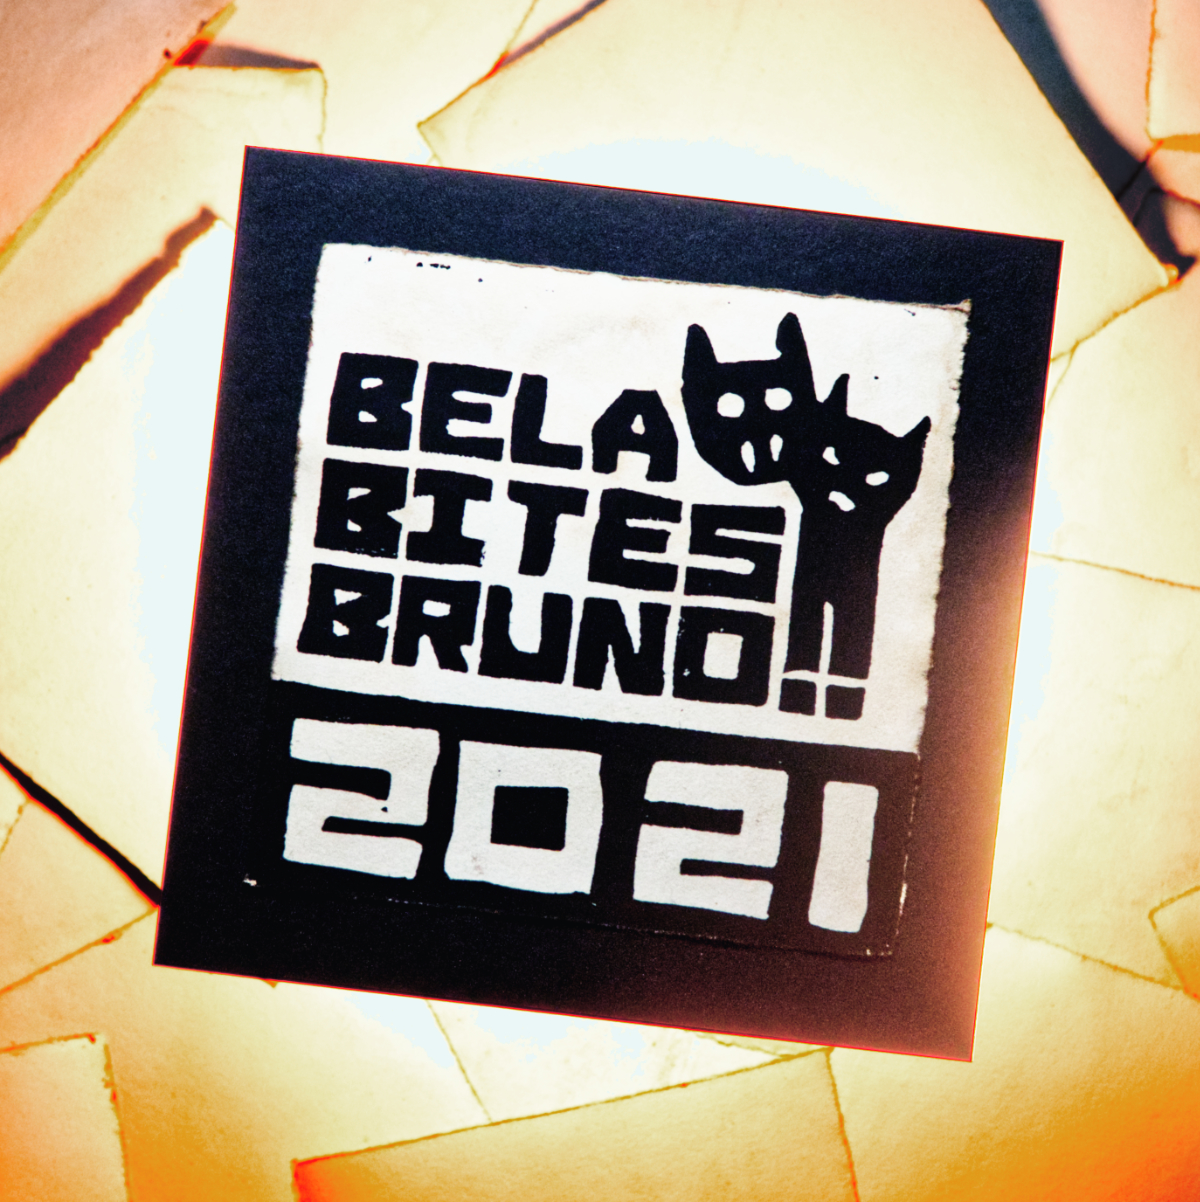 Bela Bites Bruno